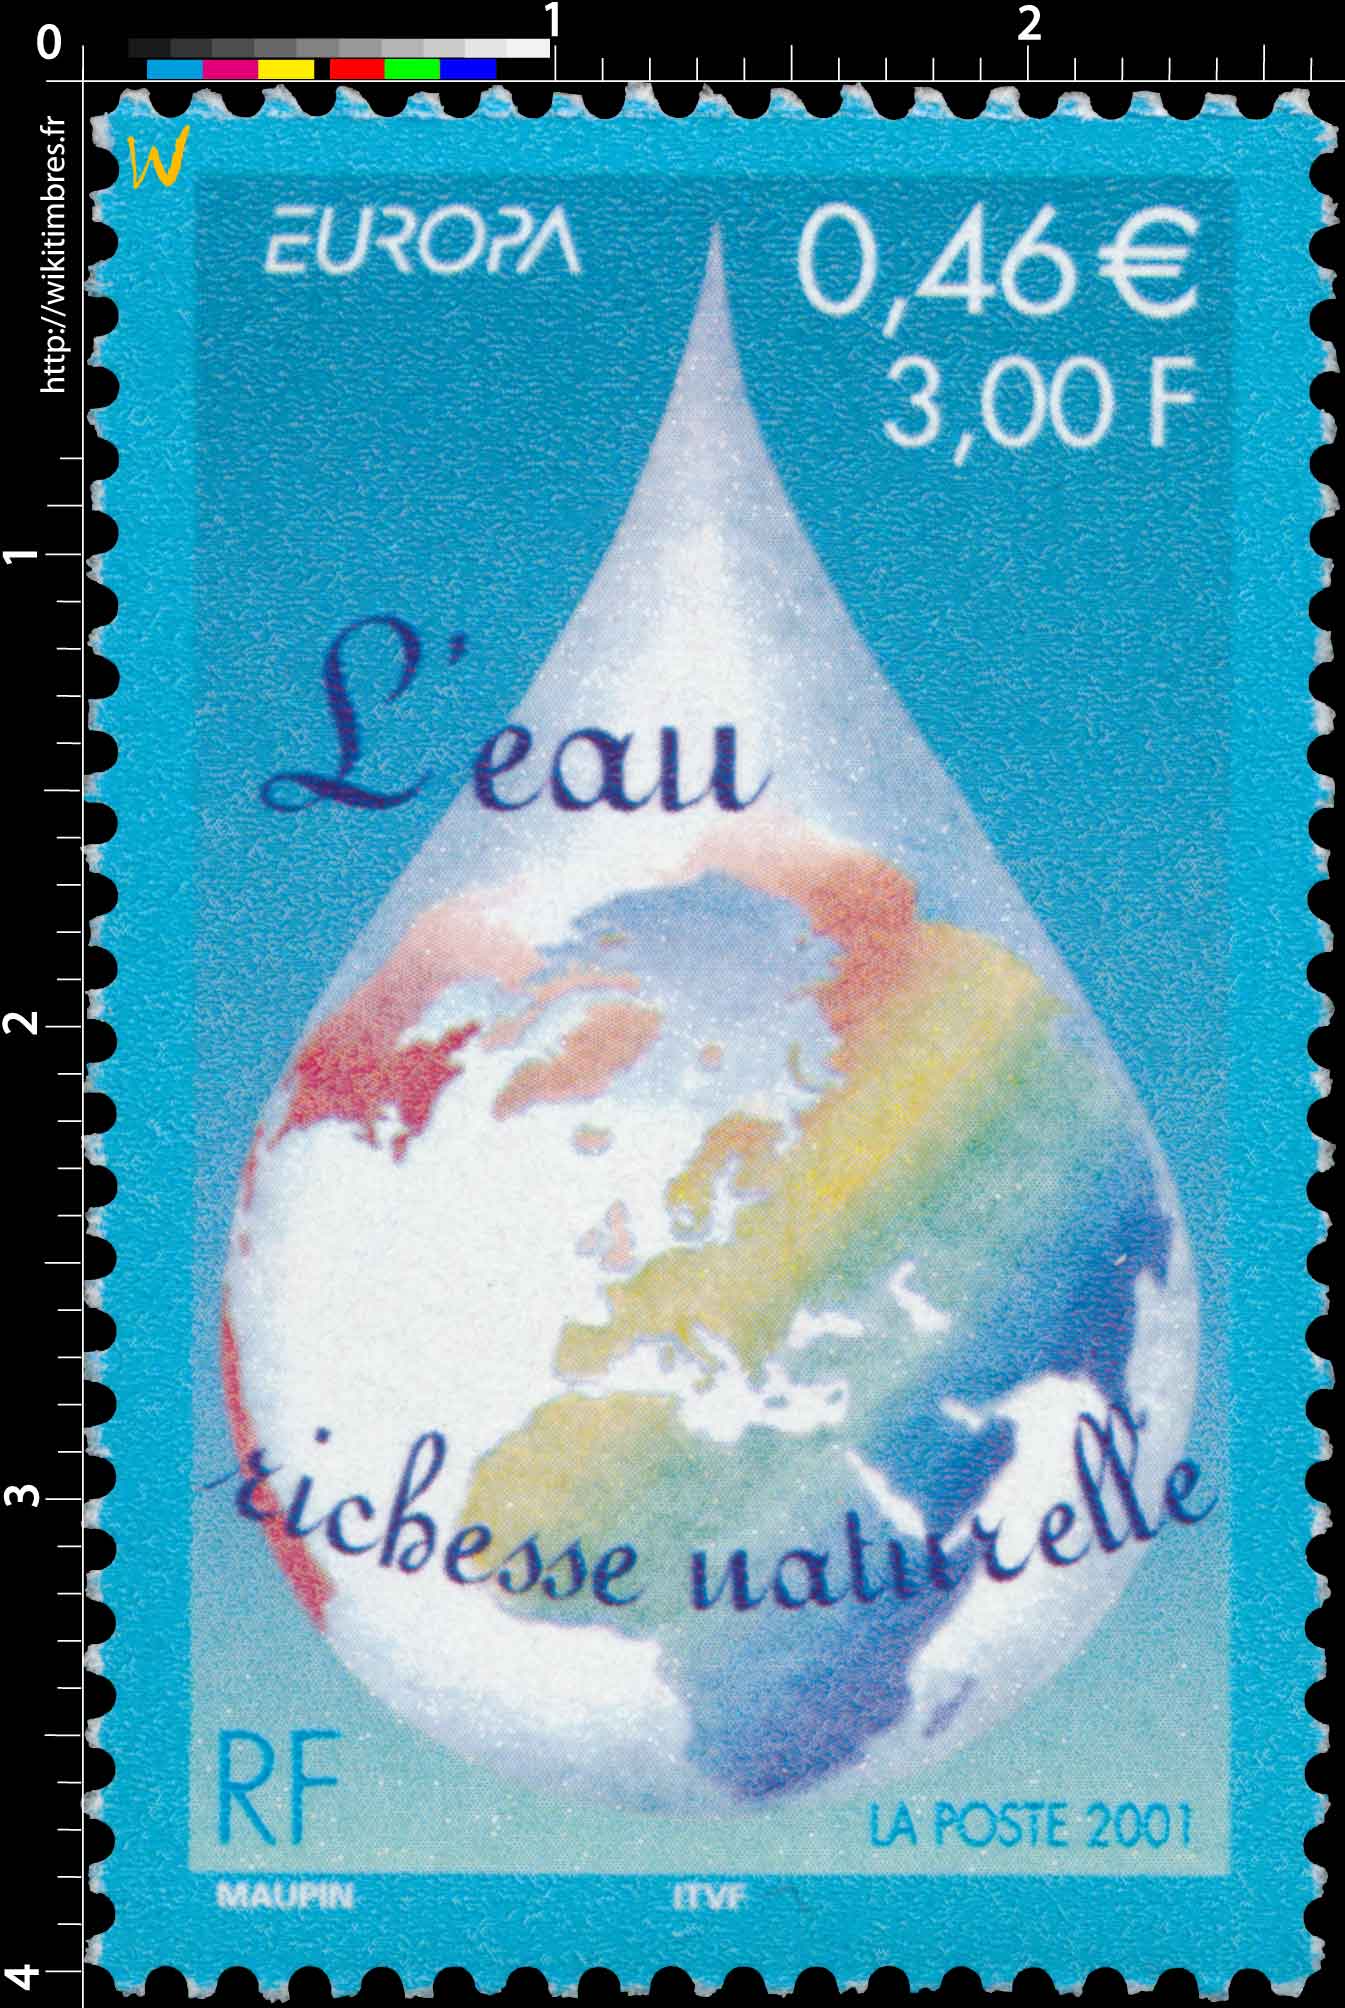 2001 EUROPA L'eau richesse naturelle